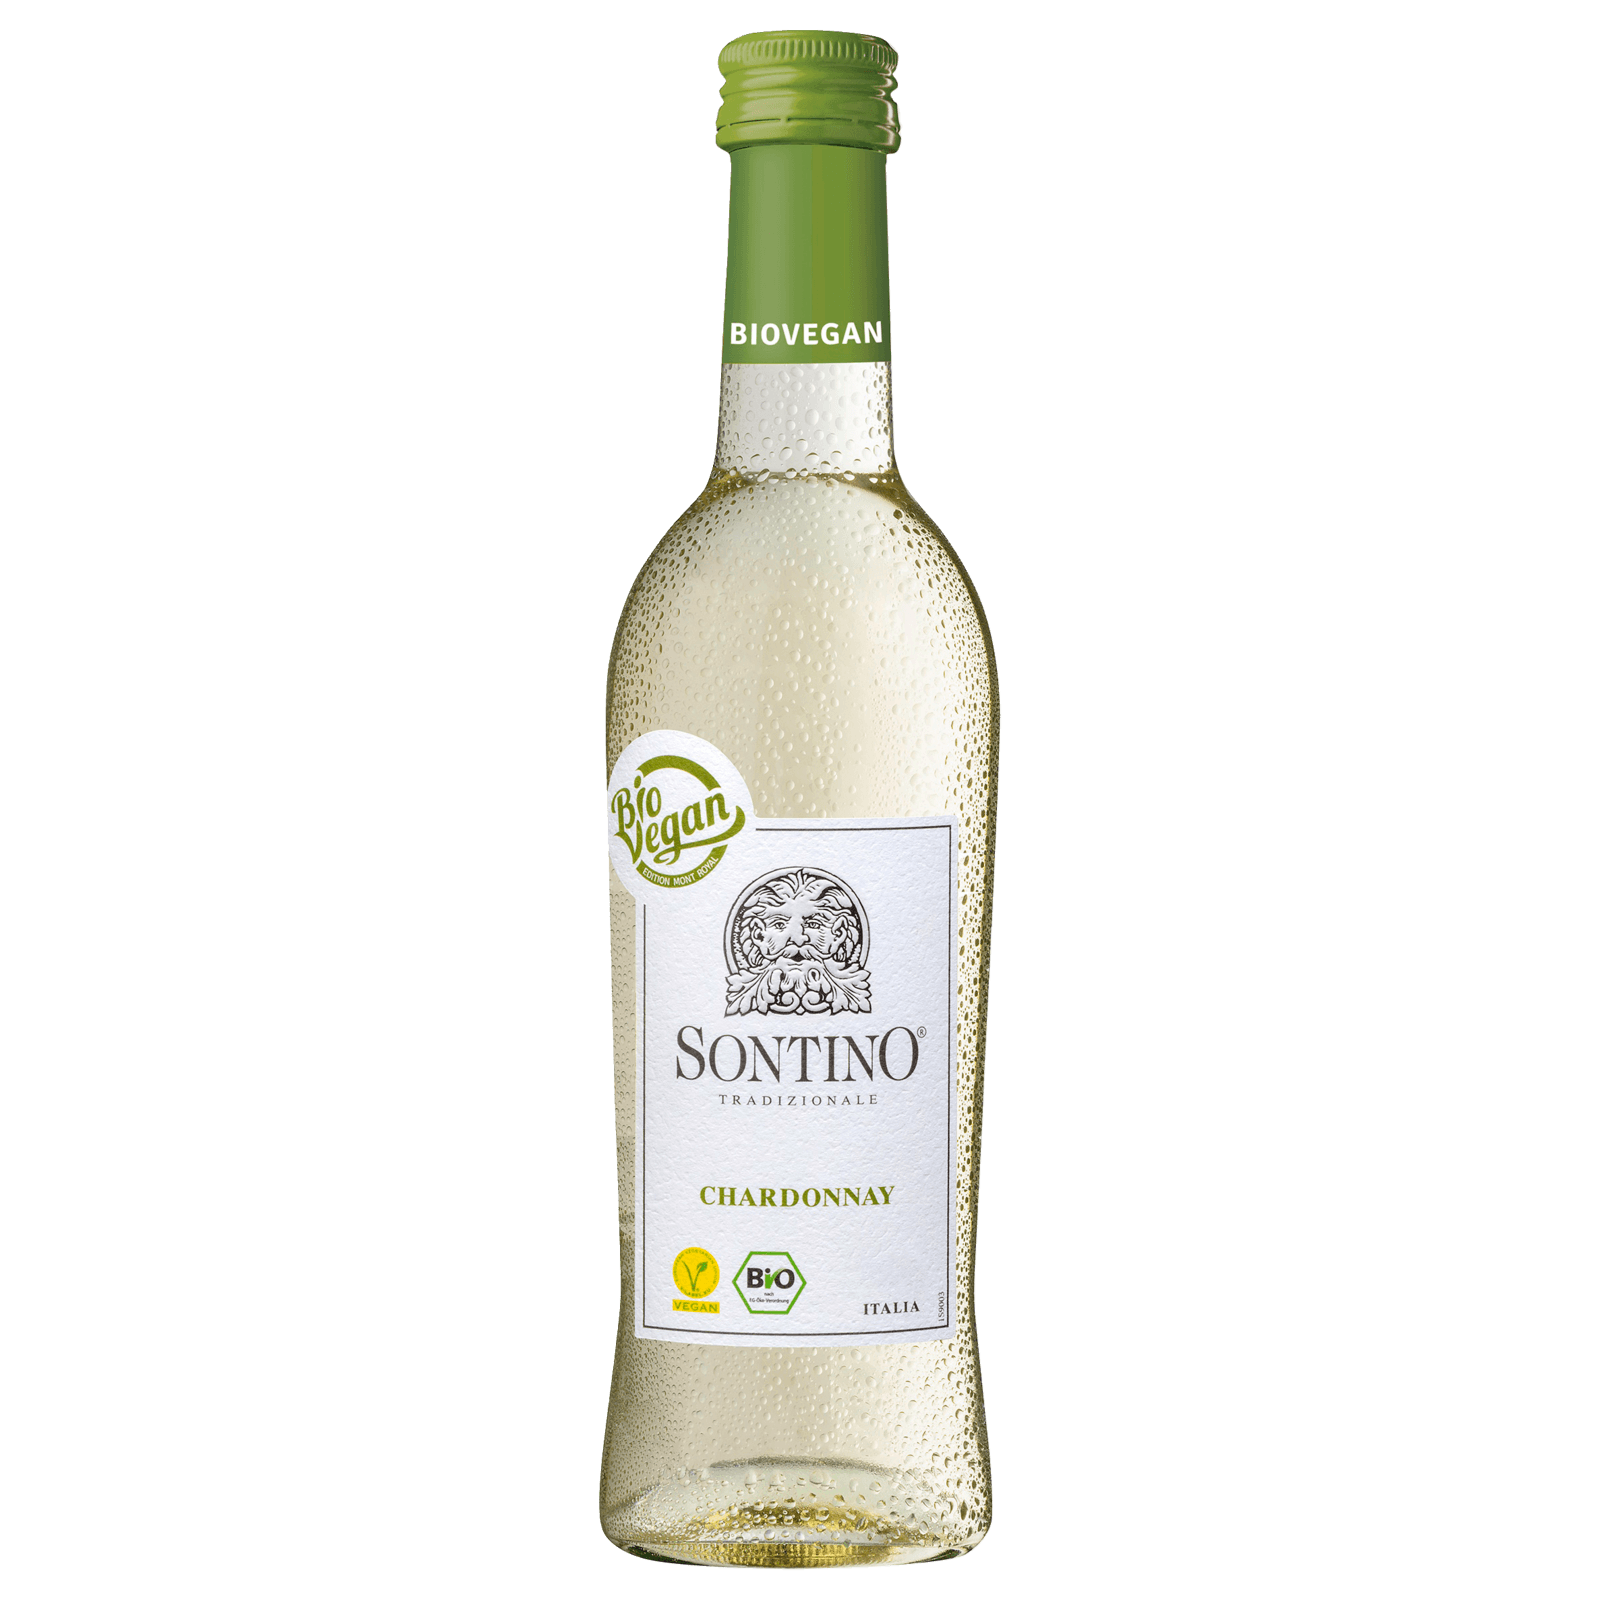 REWE Sontino bestellen! 0,25l Weißwein Chardonnay bei Bio halbtrocken vegan online